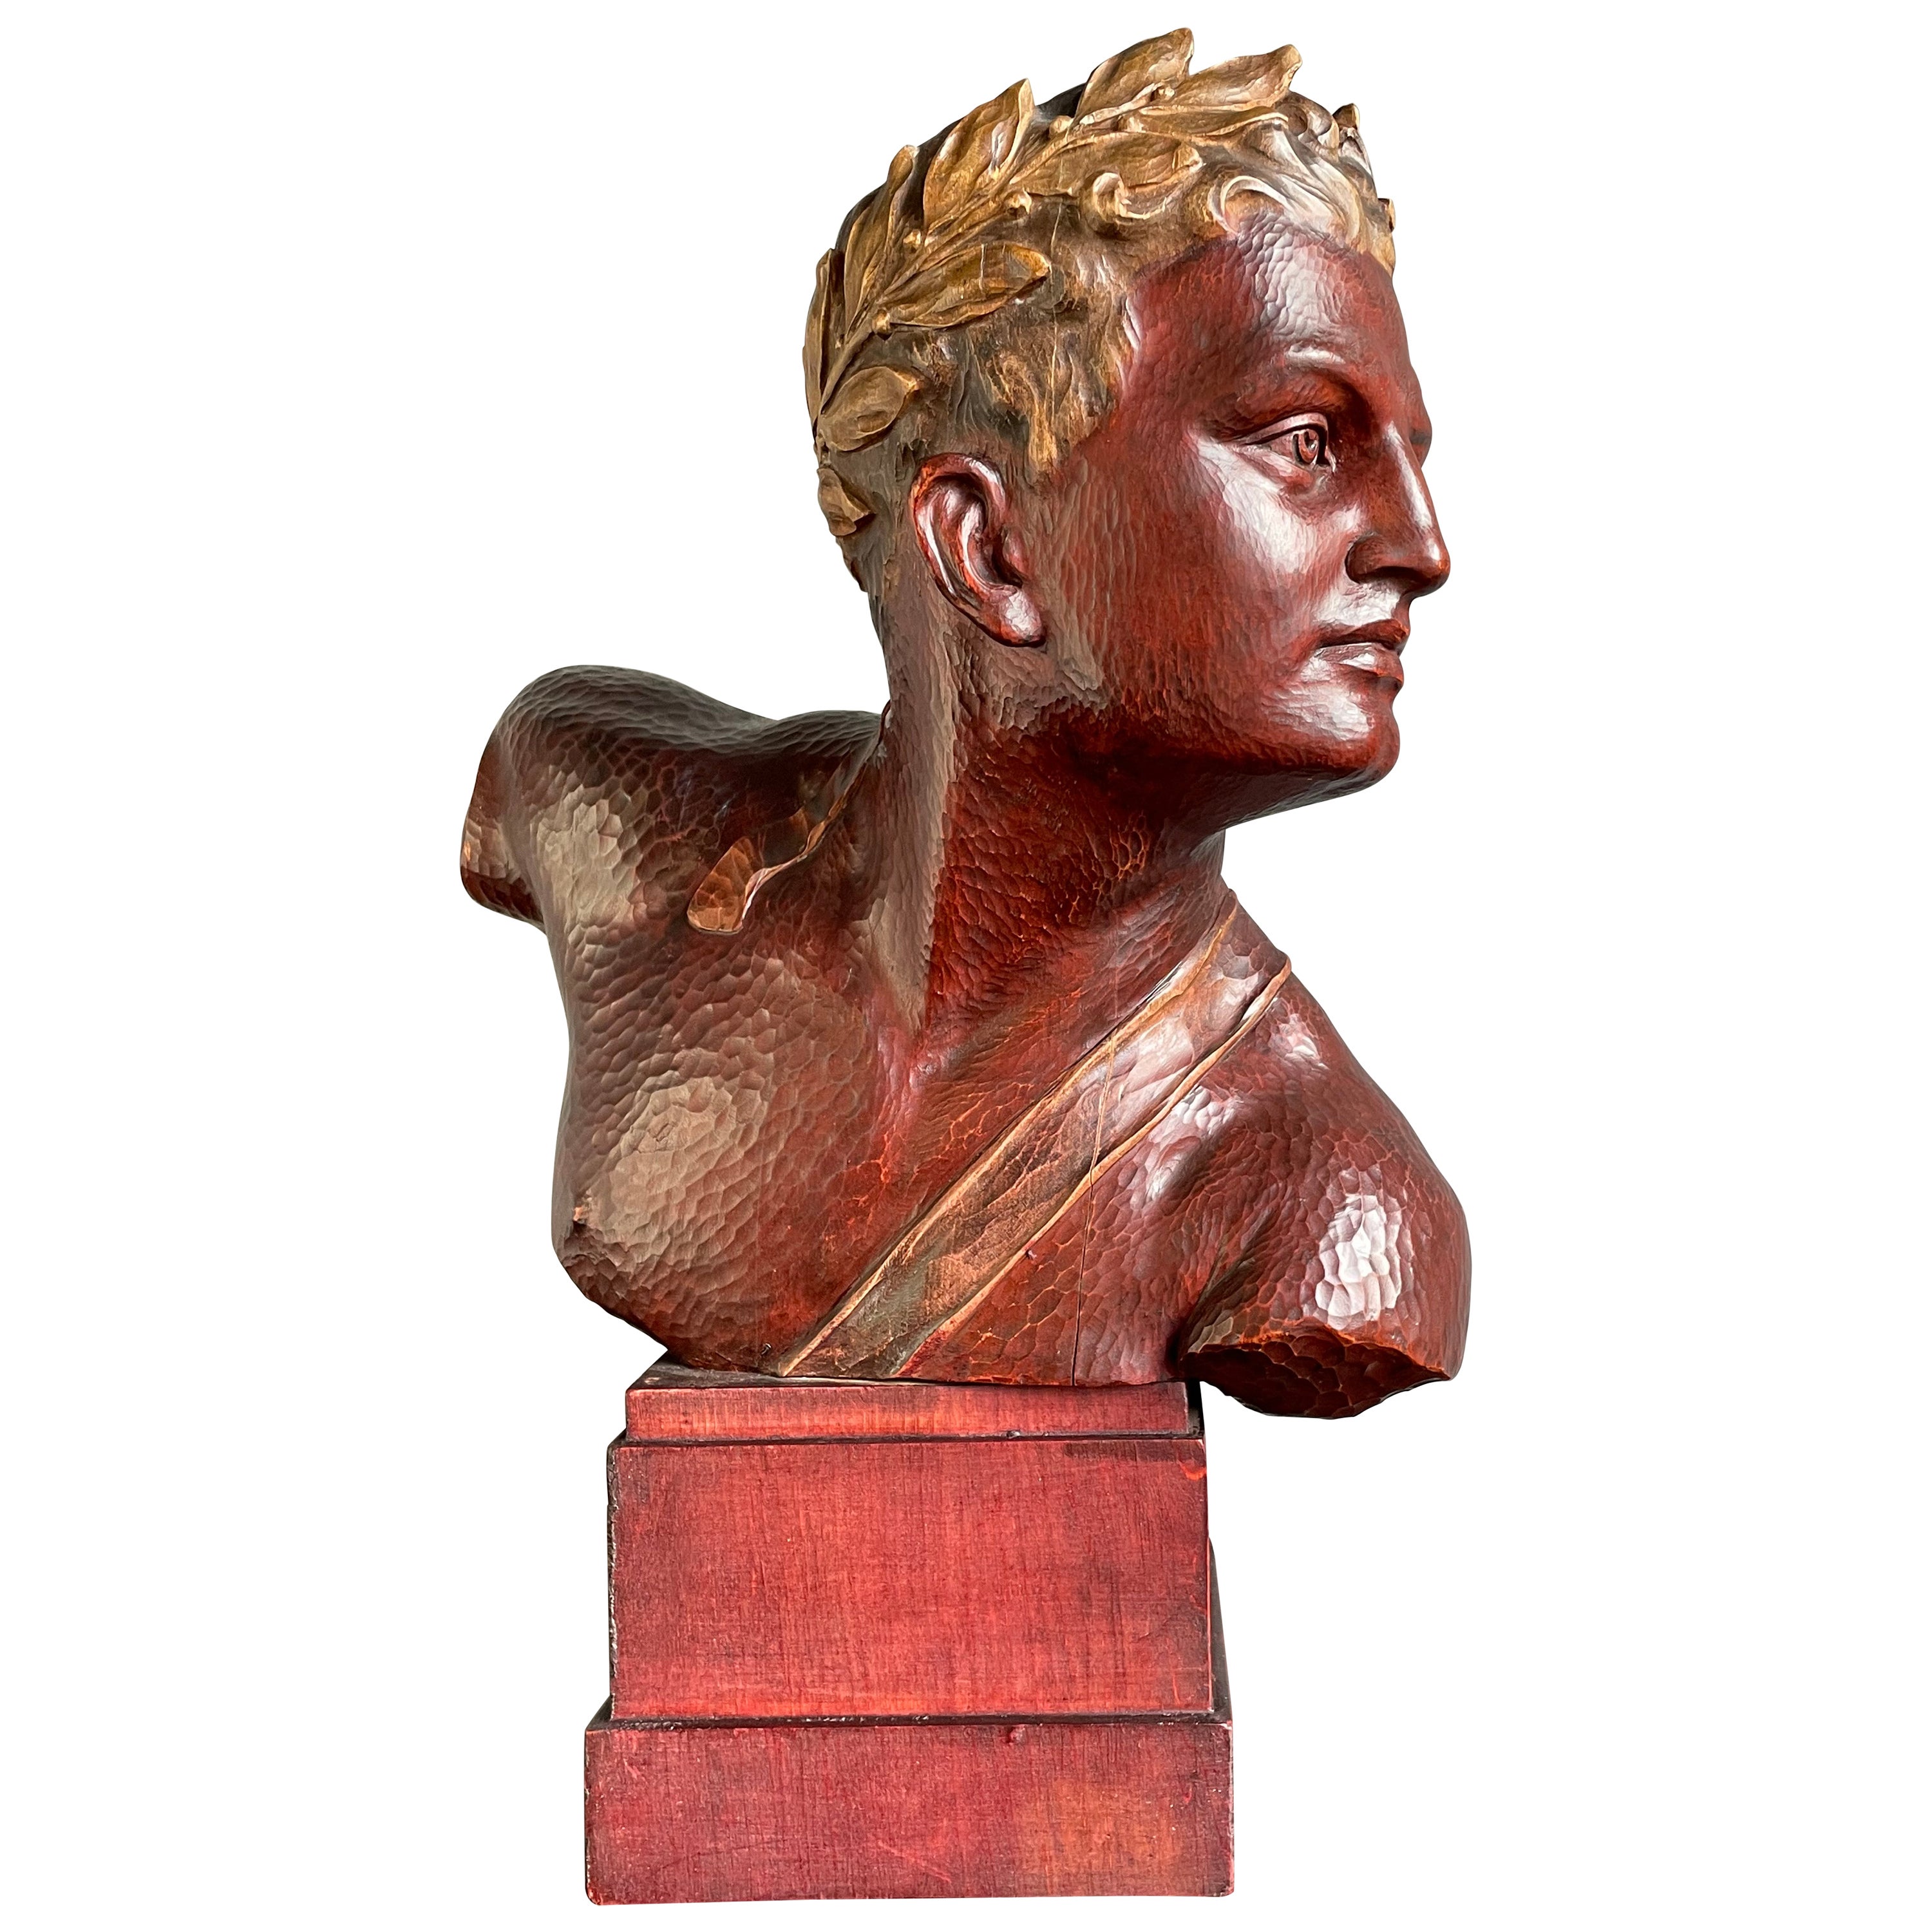 Superbe sculpture de buste d'un Olympian de l'époque Art déco, sculptée à la main Couronne de laurier